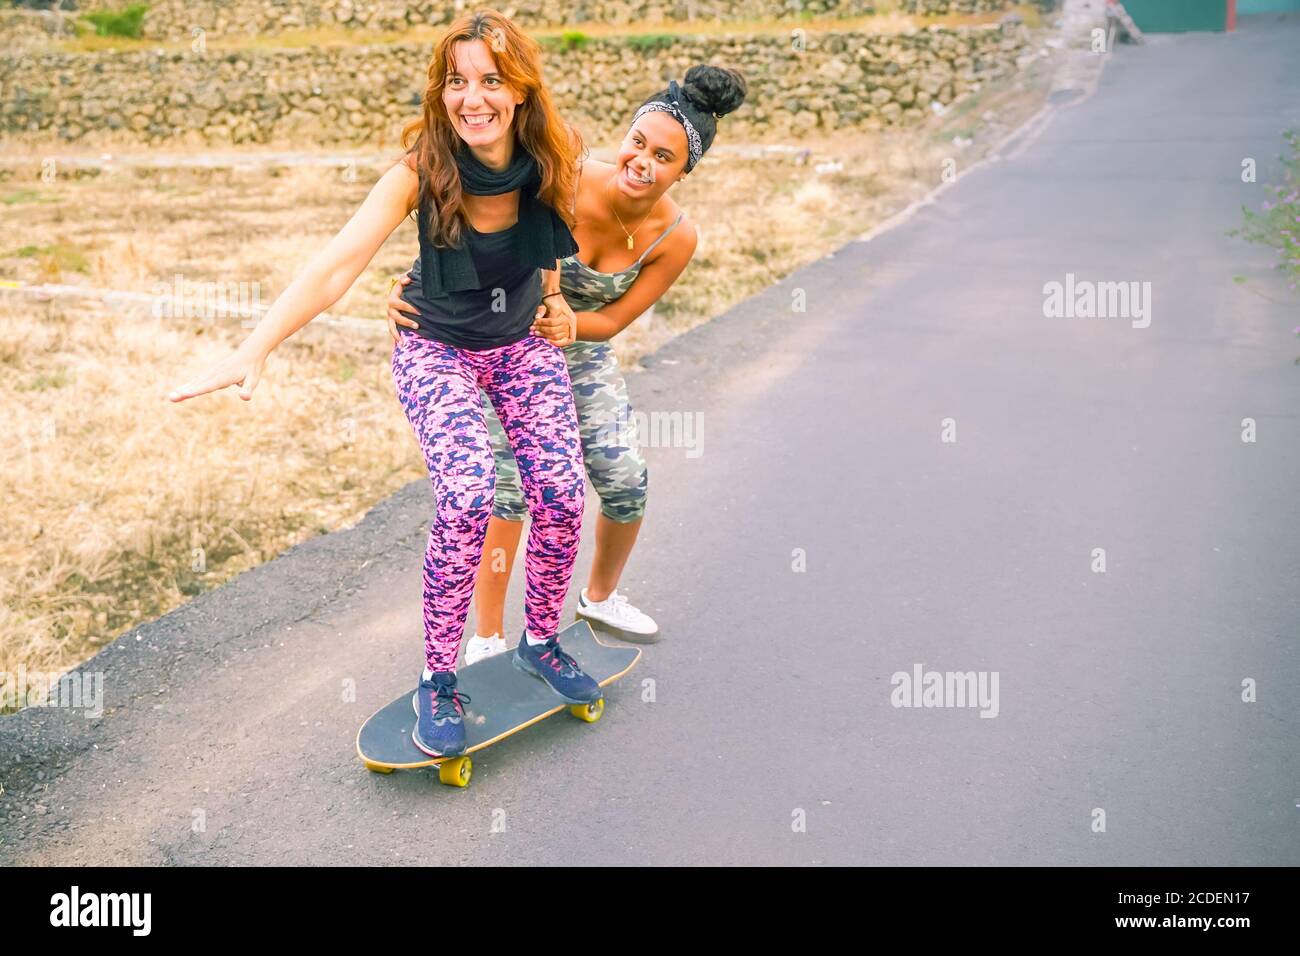 Junge Mutter übt auf Skateboard auf der Straße. Tochter hilft Mama auf  Skateboard. Mama lernen, Skateboard fahren, wie Tochter lehrt sie in th  Stockfotografie - Alamy